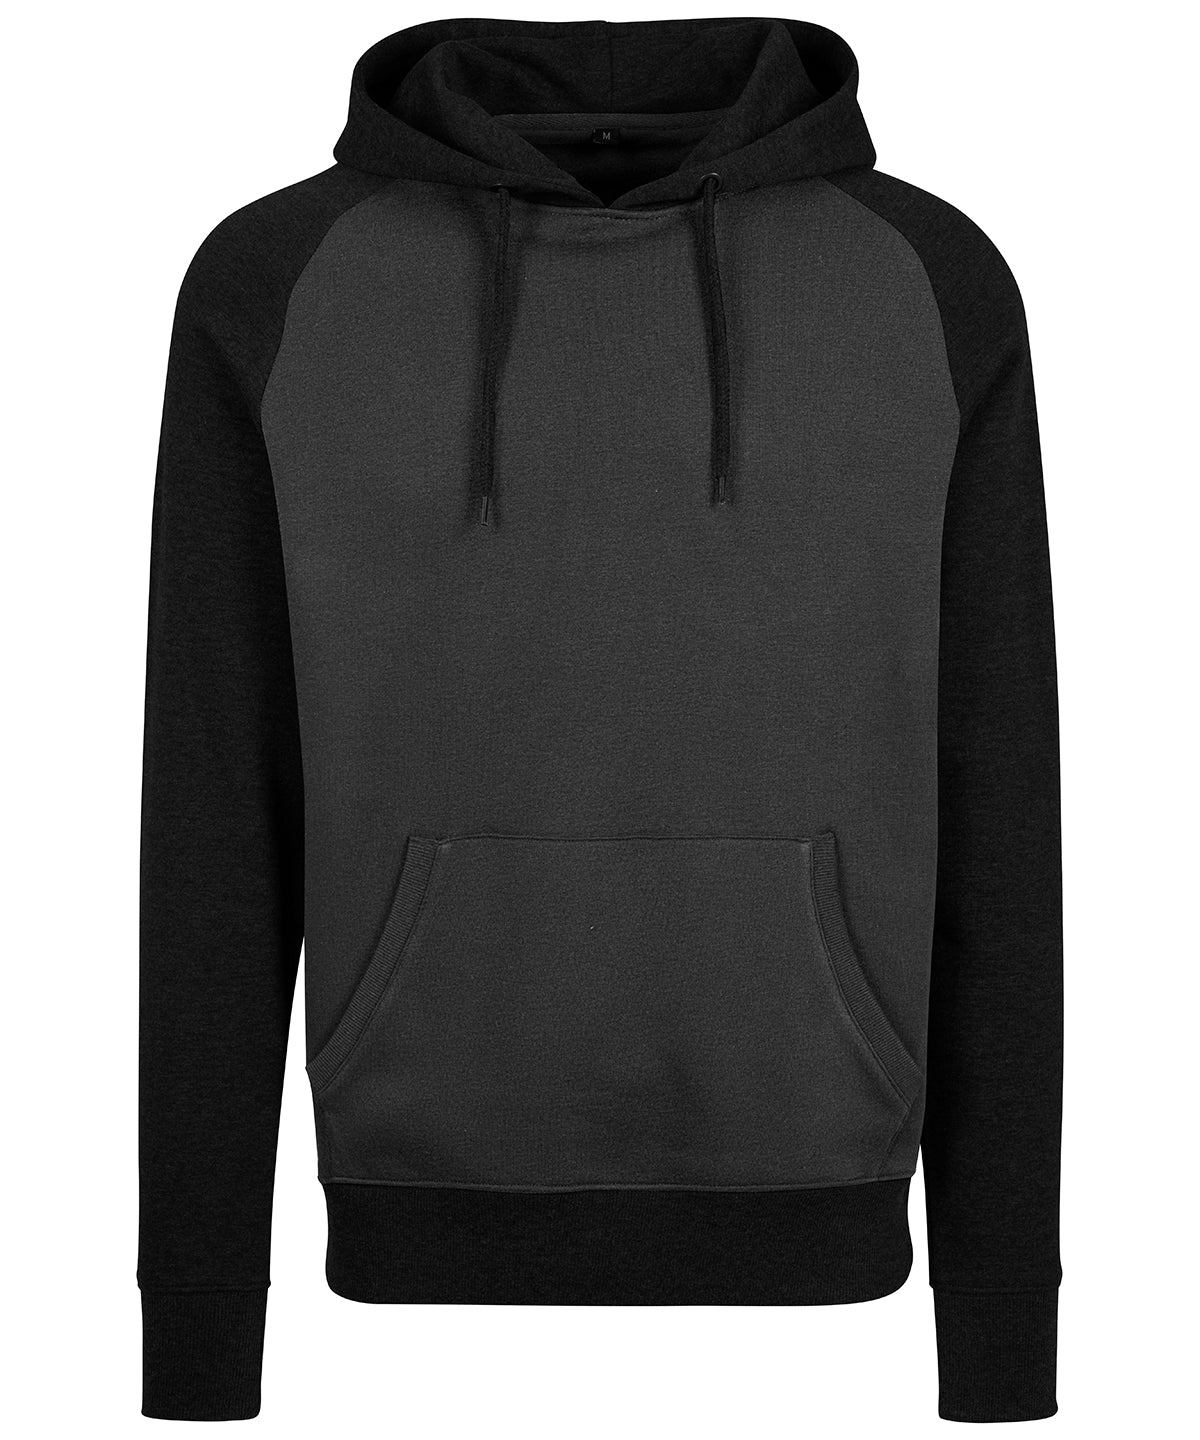 Personalised Hoodies - Dark Grey Build Your Brand Raglan hoodie